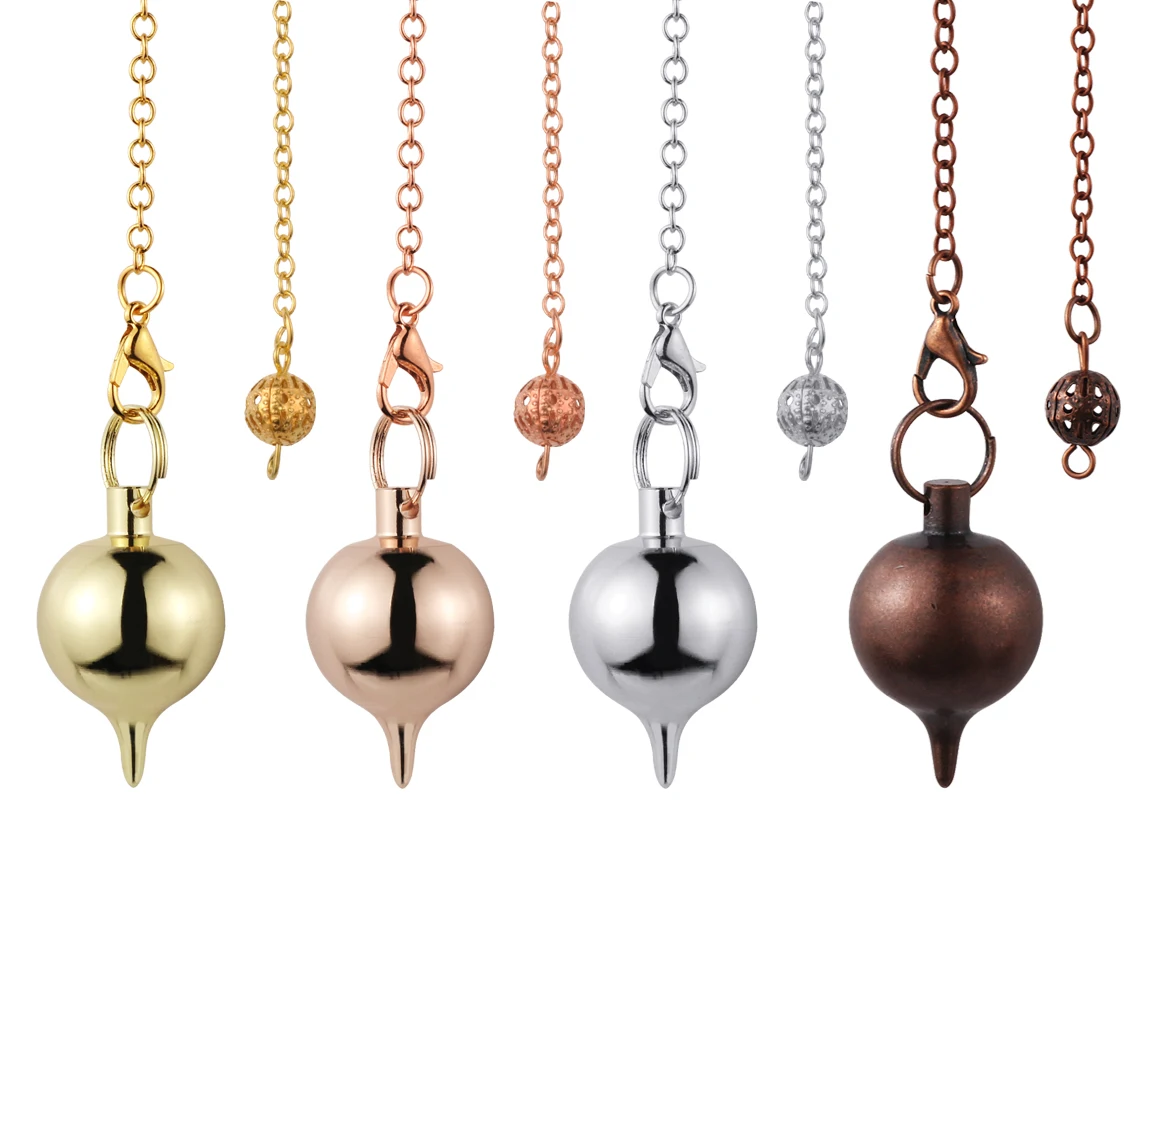 Classic Brass Ball Metal Healing Pendulum Gold Plated Reiki Healing Dowsing Divination Golden Metal Pendulums